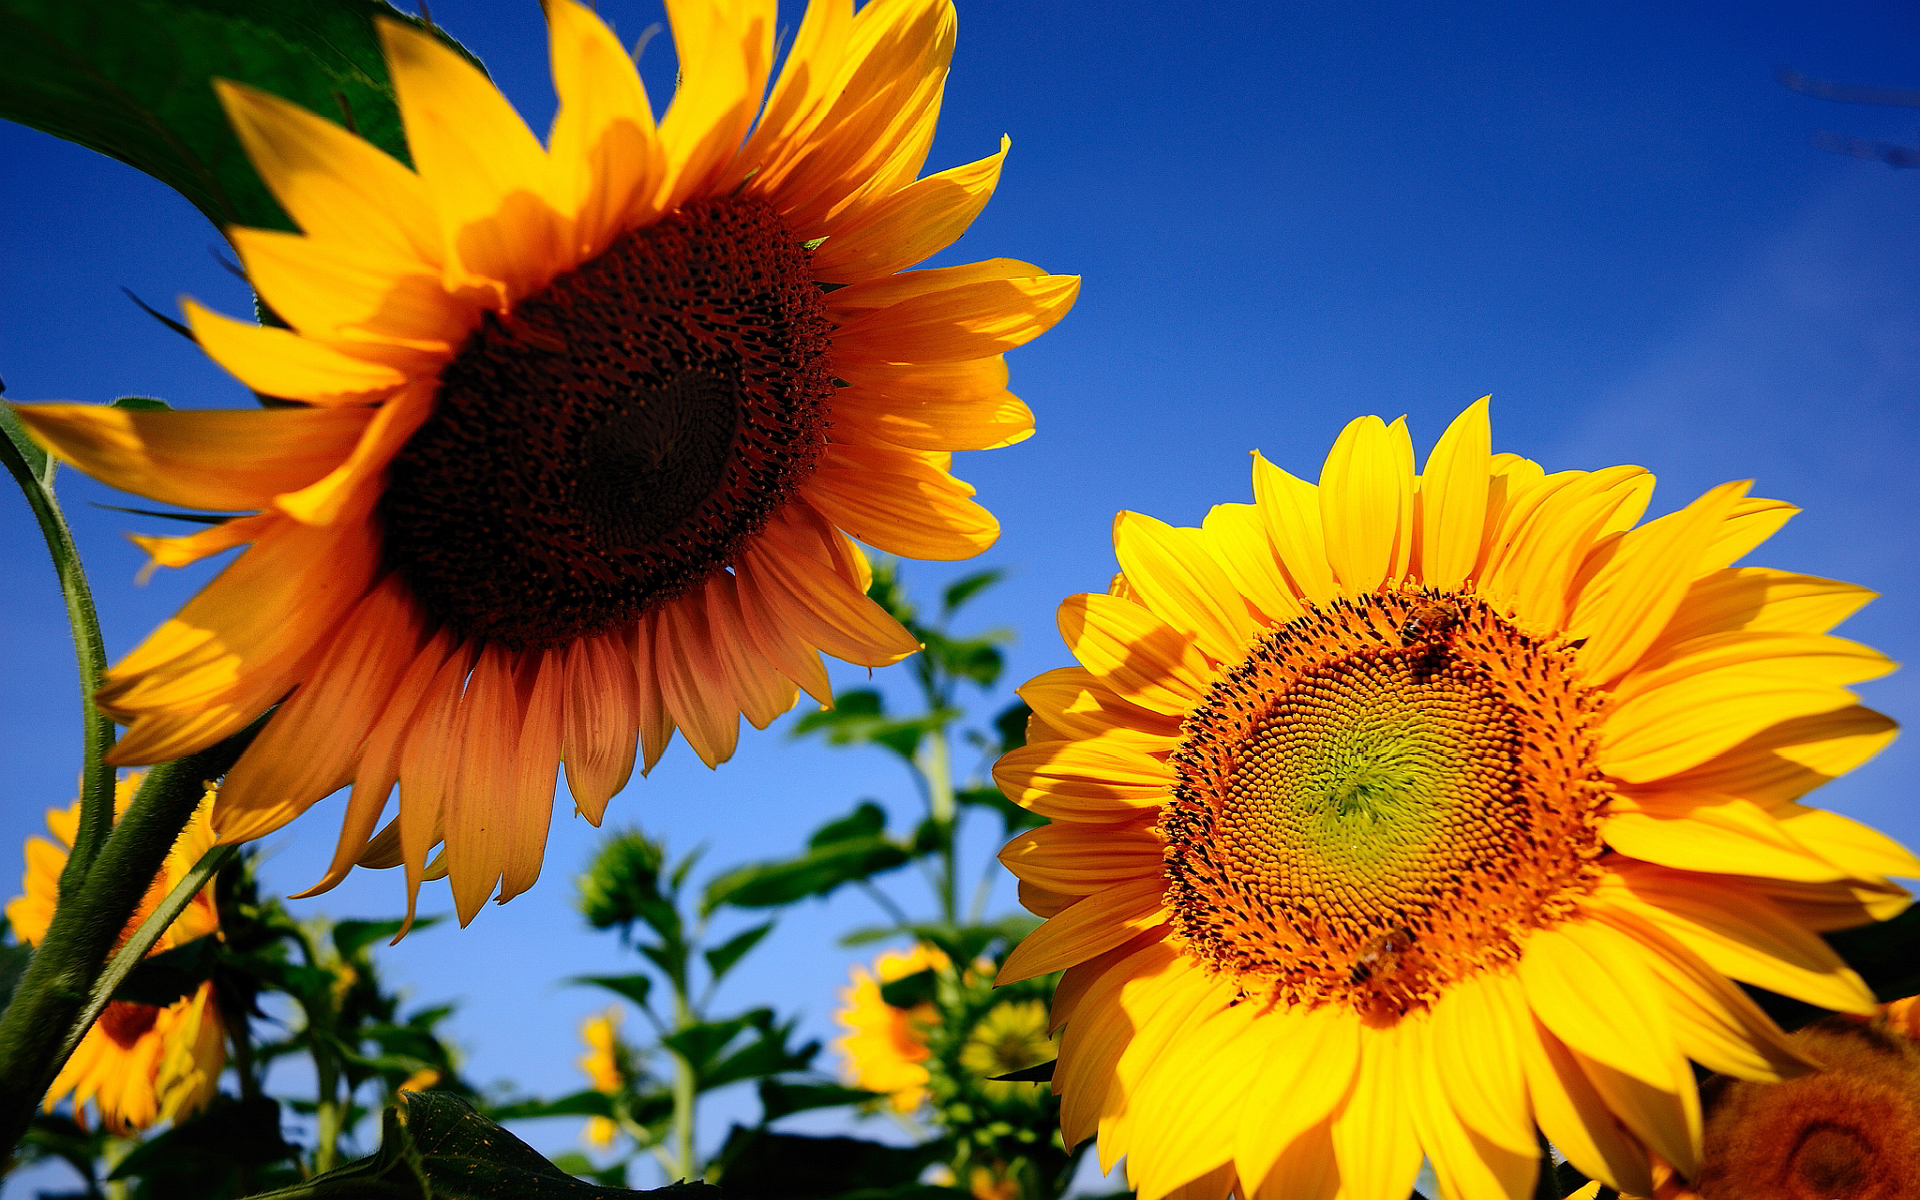 sunflowers background hd - HD Desktop Wallpapers | 4k HD